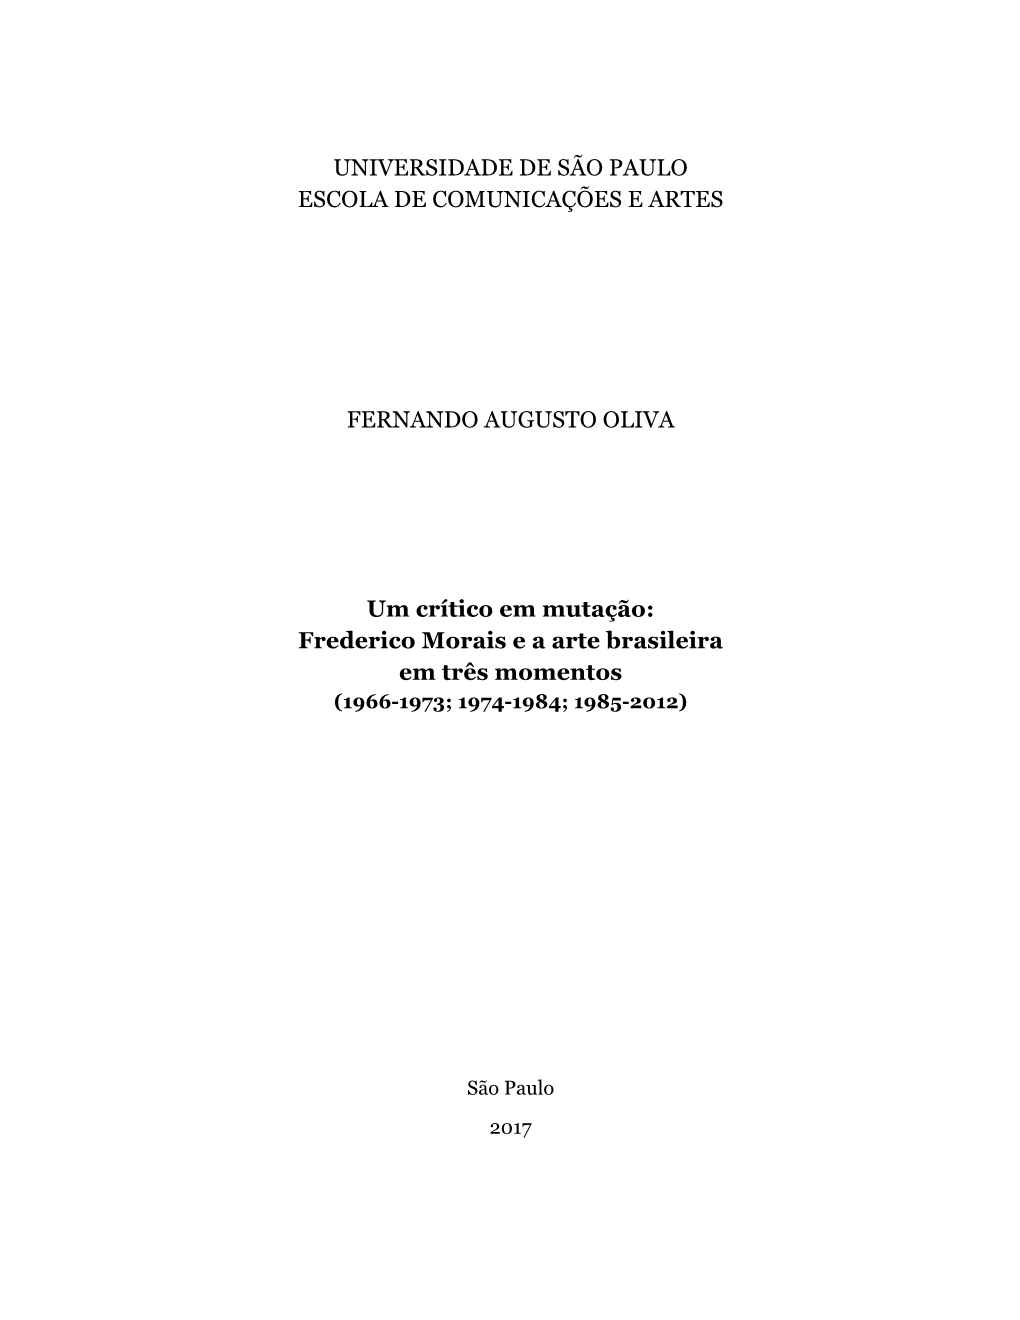 Frederico Morais E a Arte Brasileira Em Três Momentos (1966-1973; 1974-1984; 1985-2012)